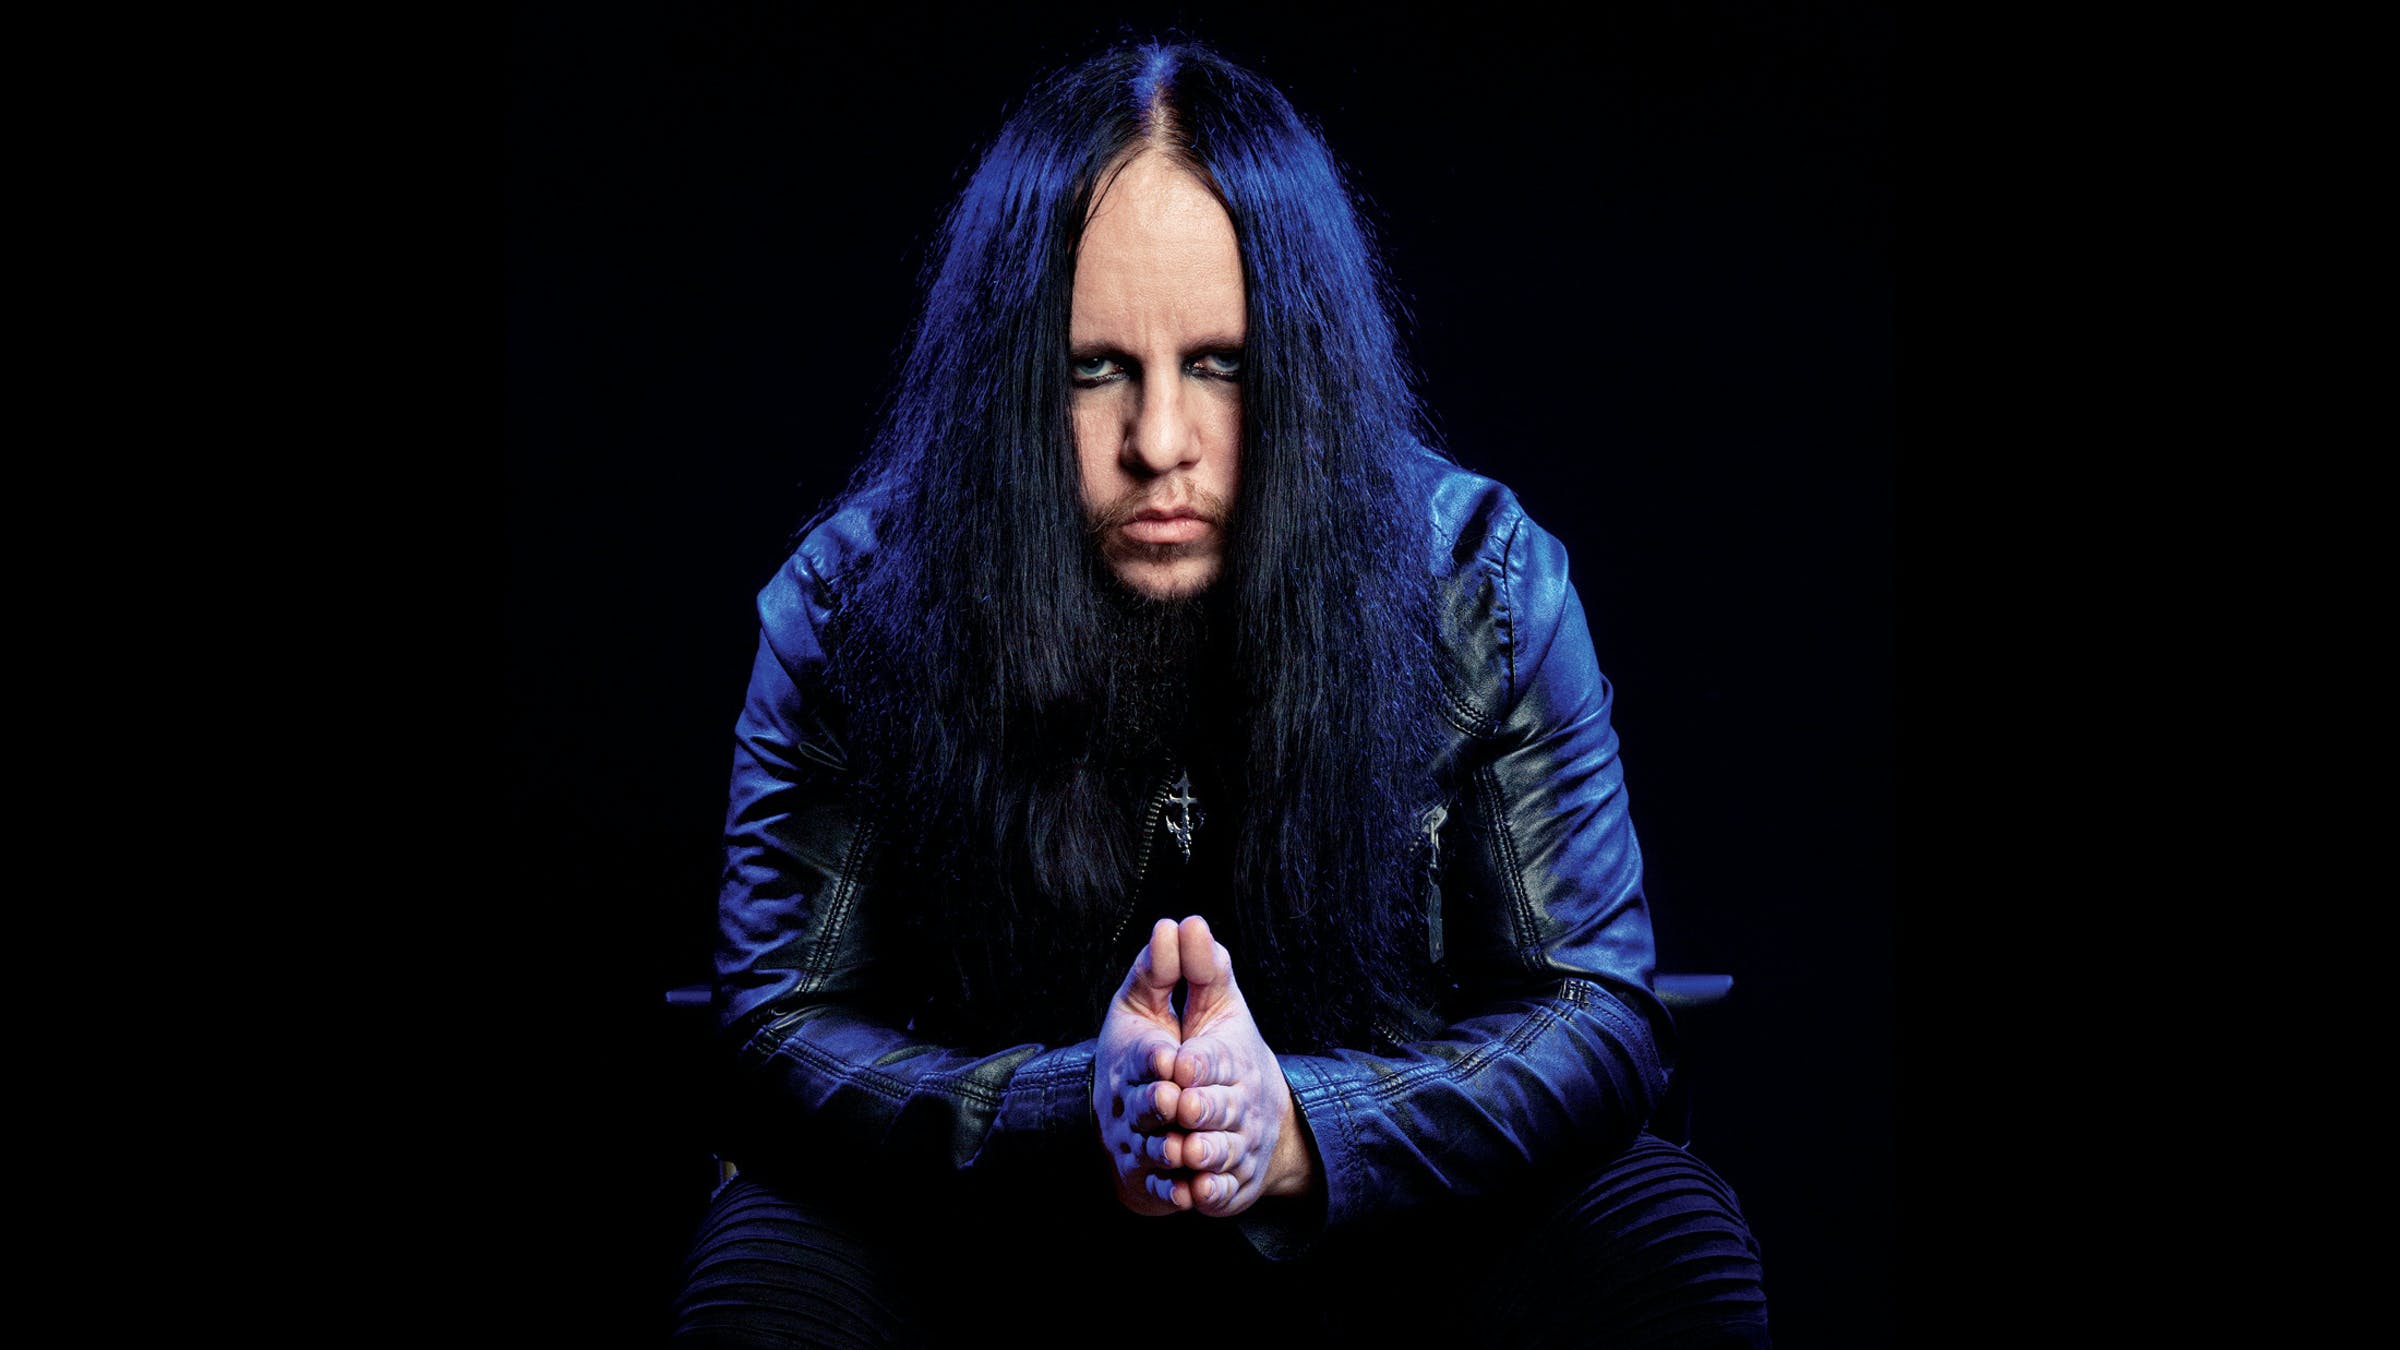 Joey Jordison Slipknot wallpaper